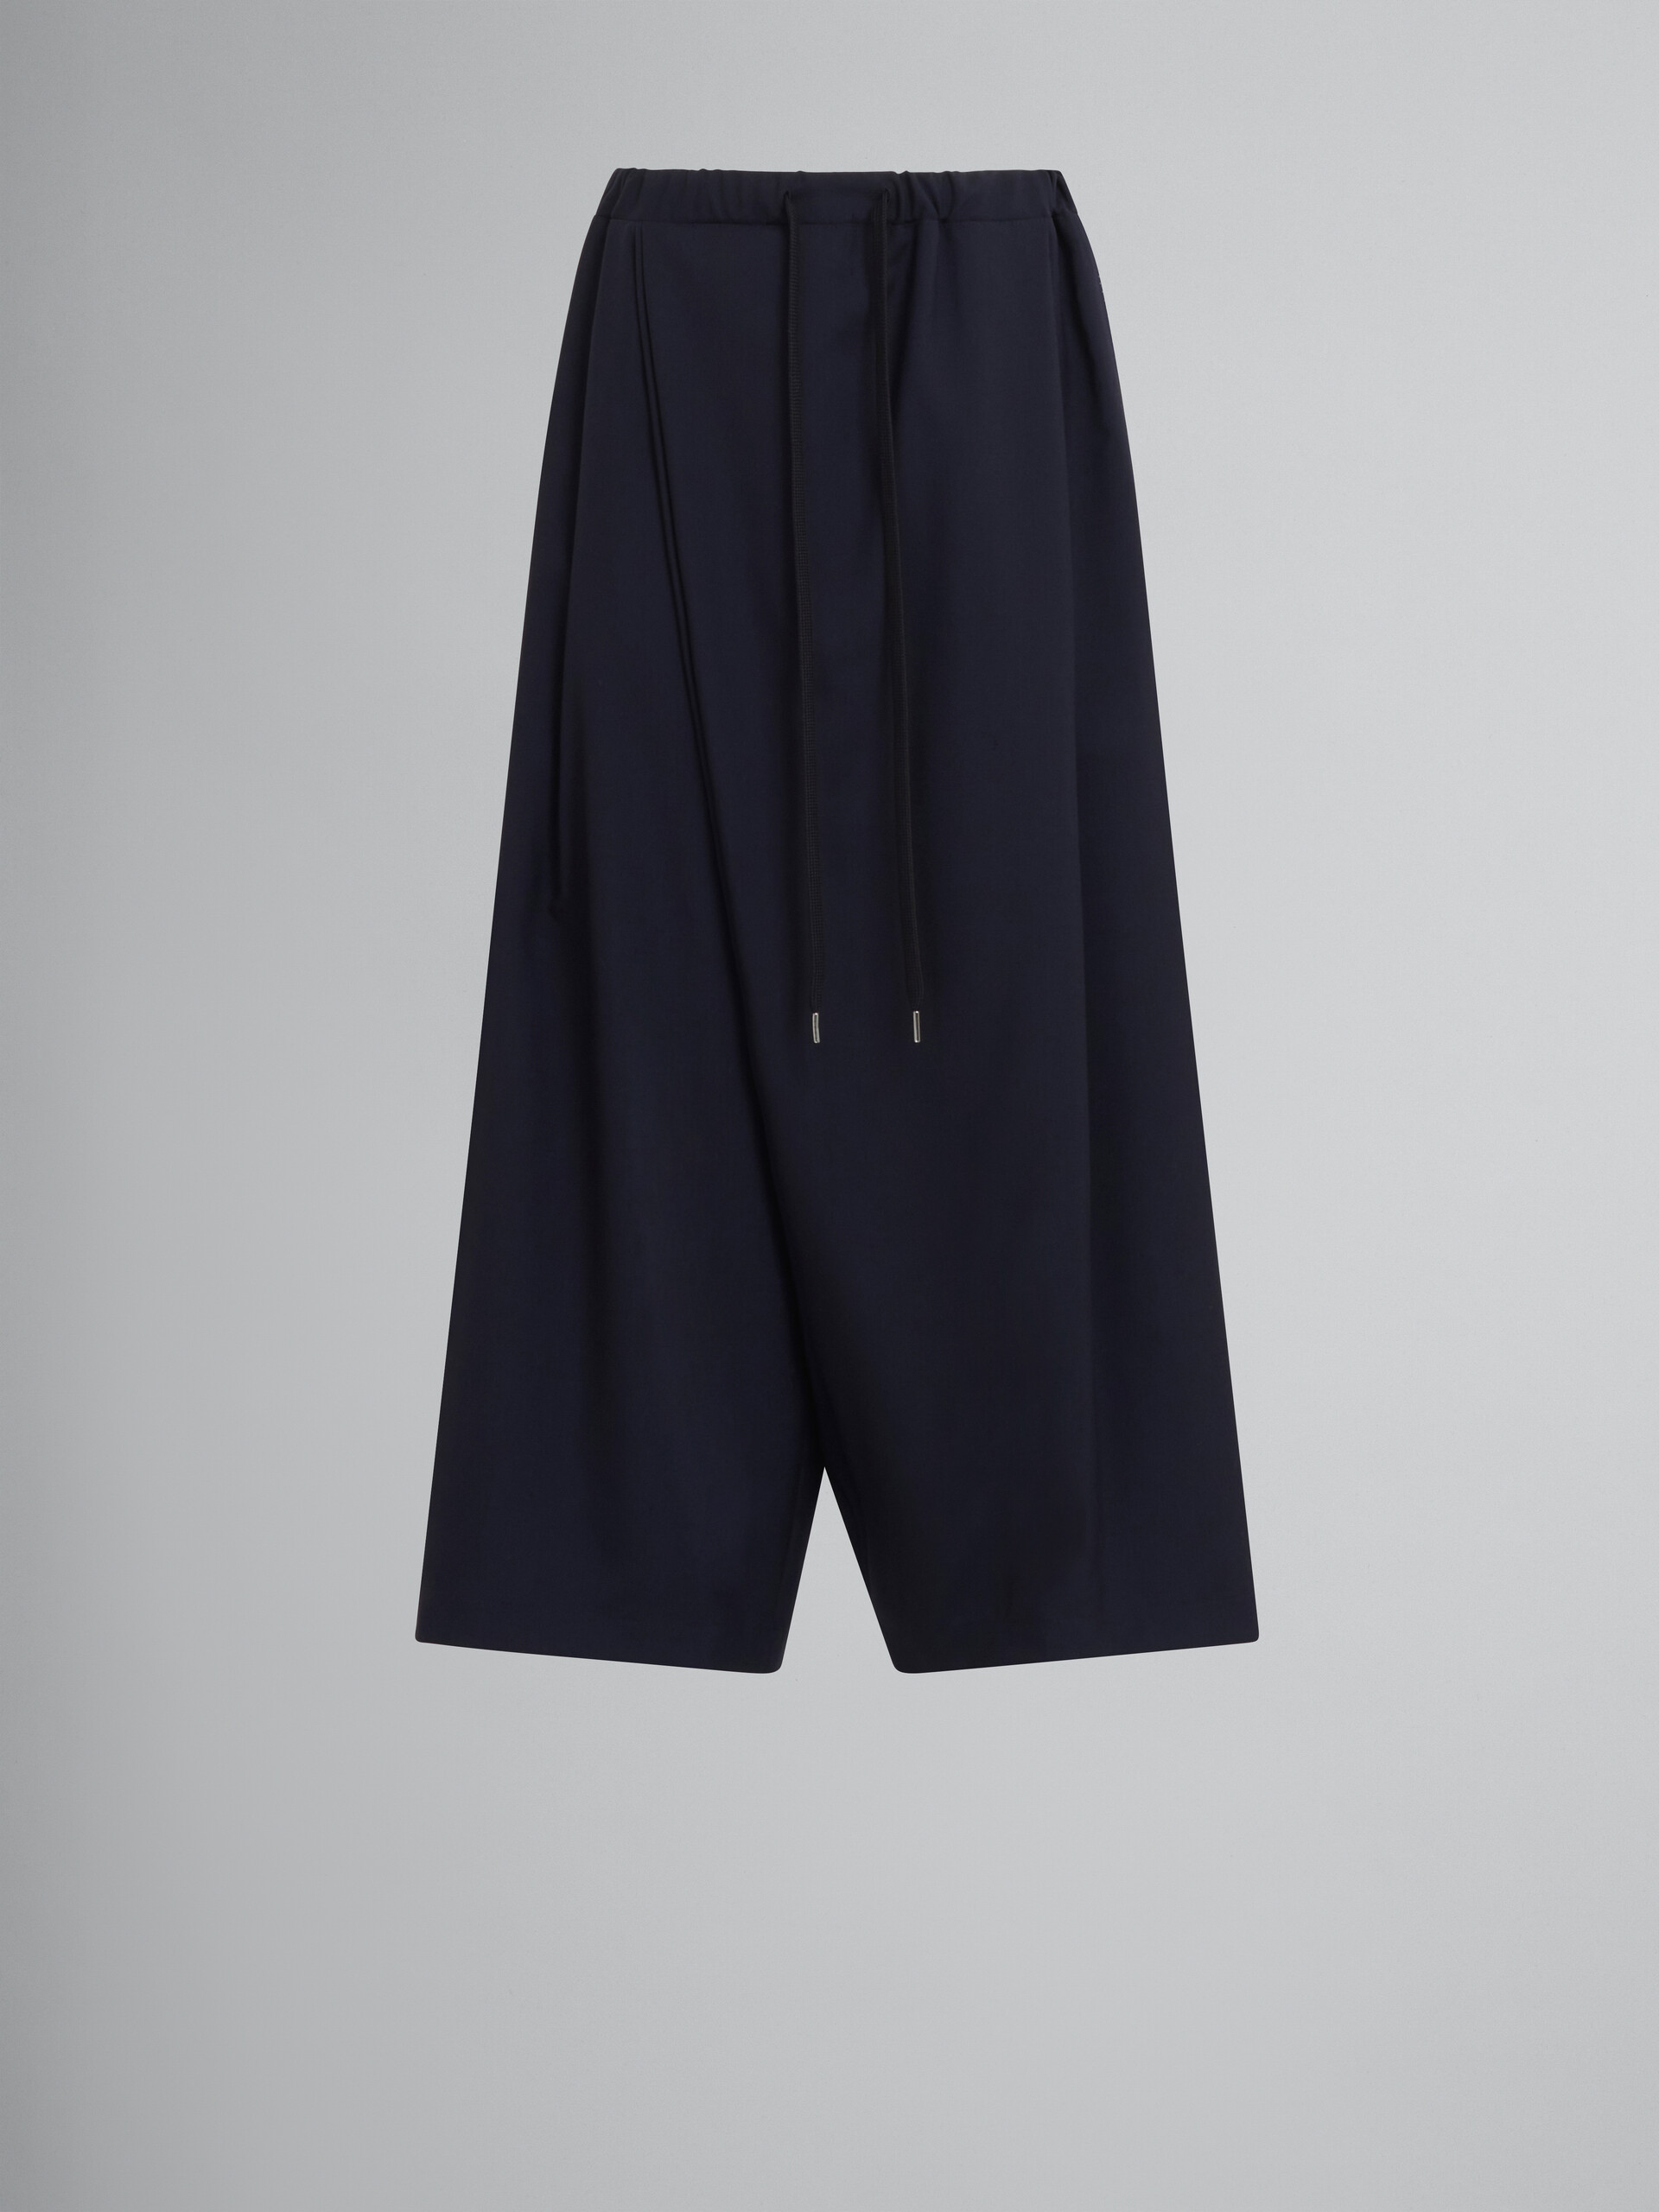 Karate pants in blue tropical wool - Pants - Image 1